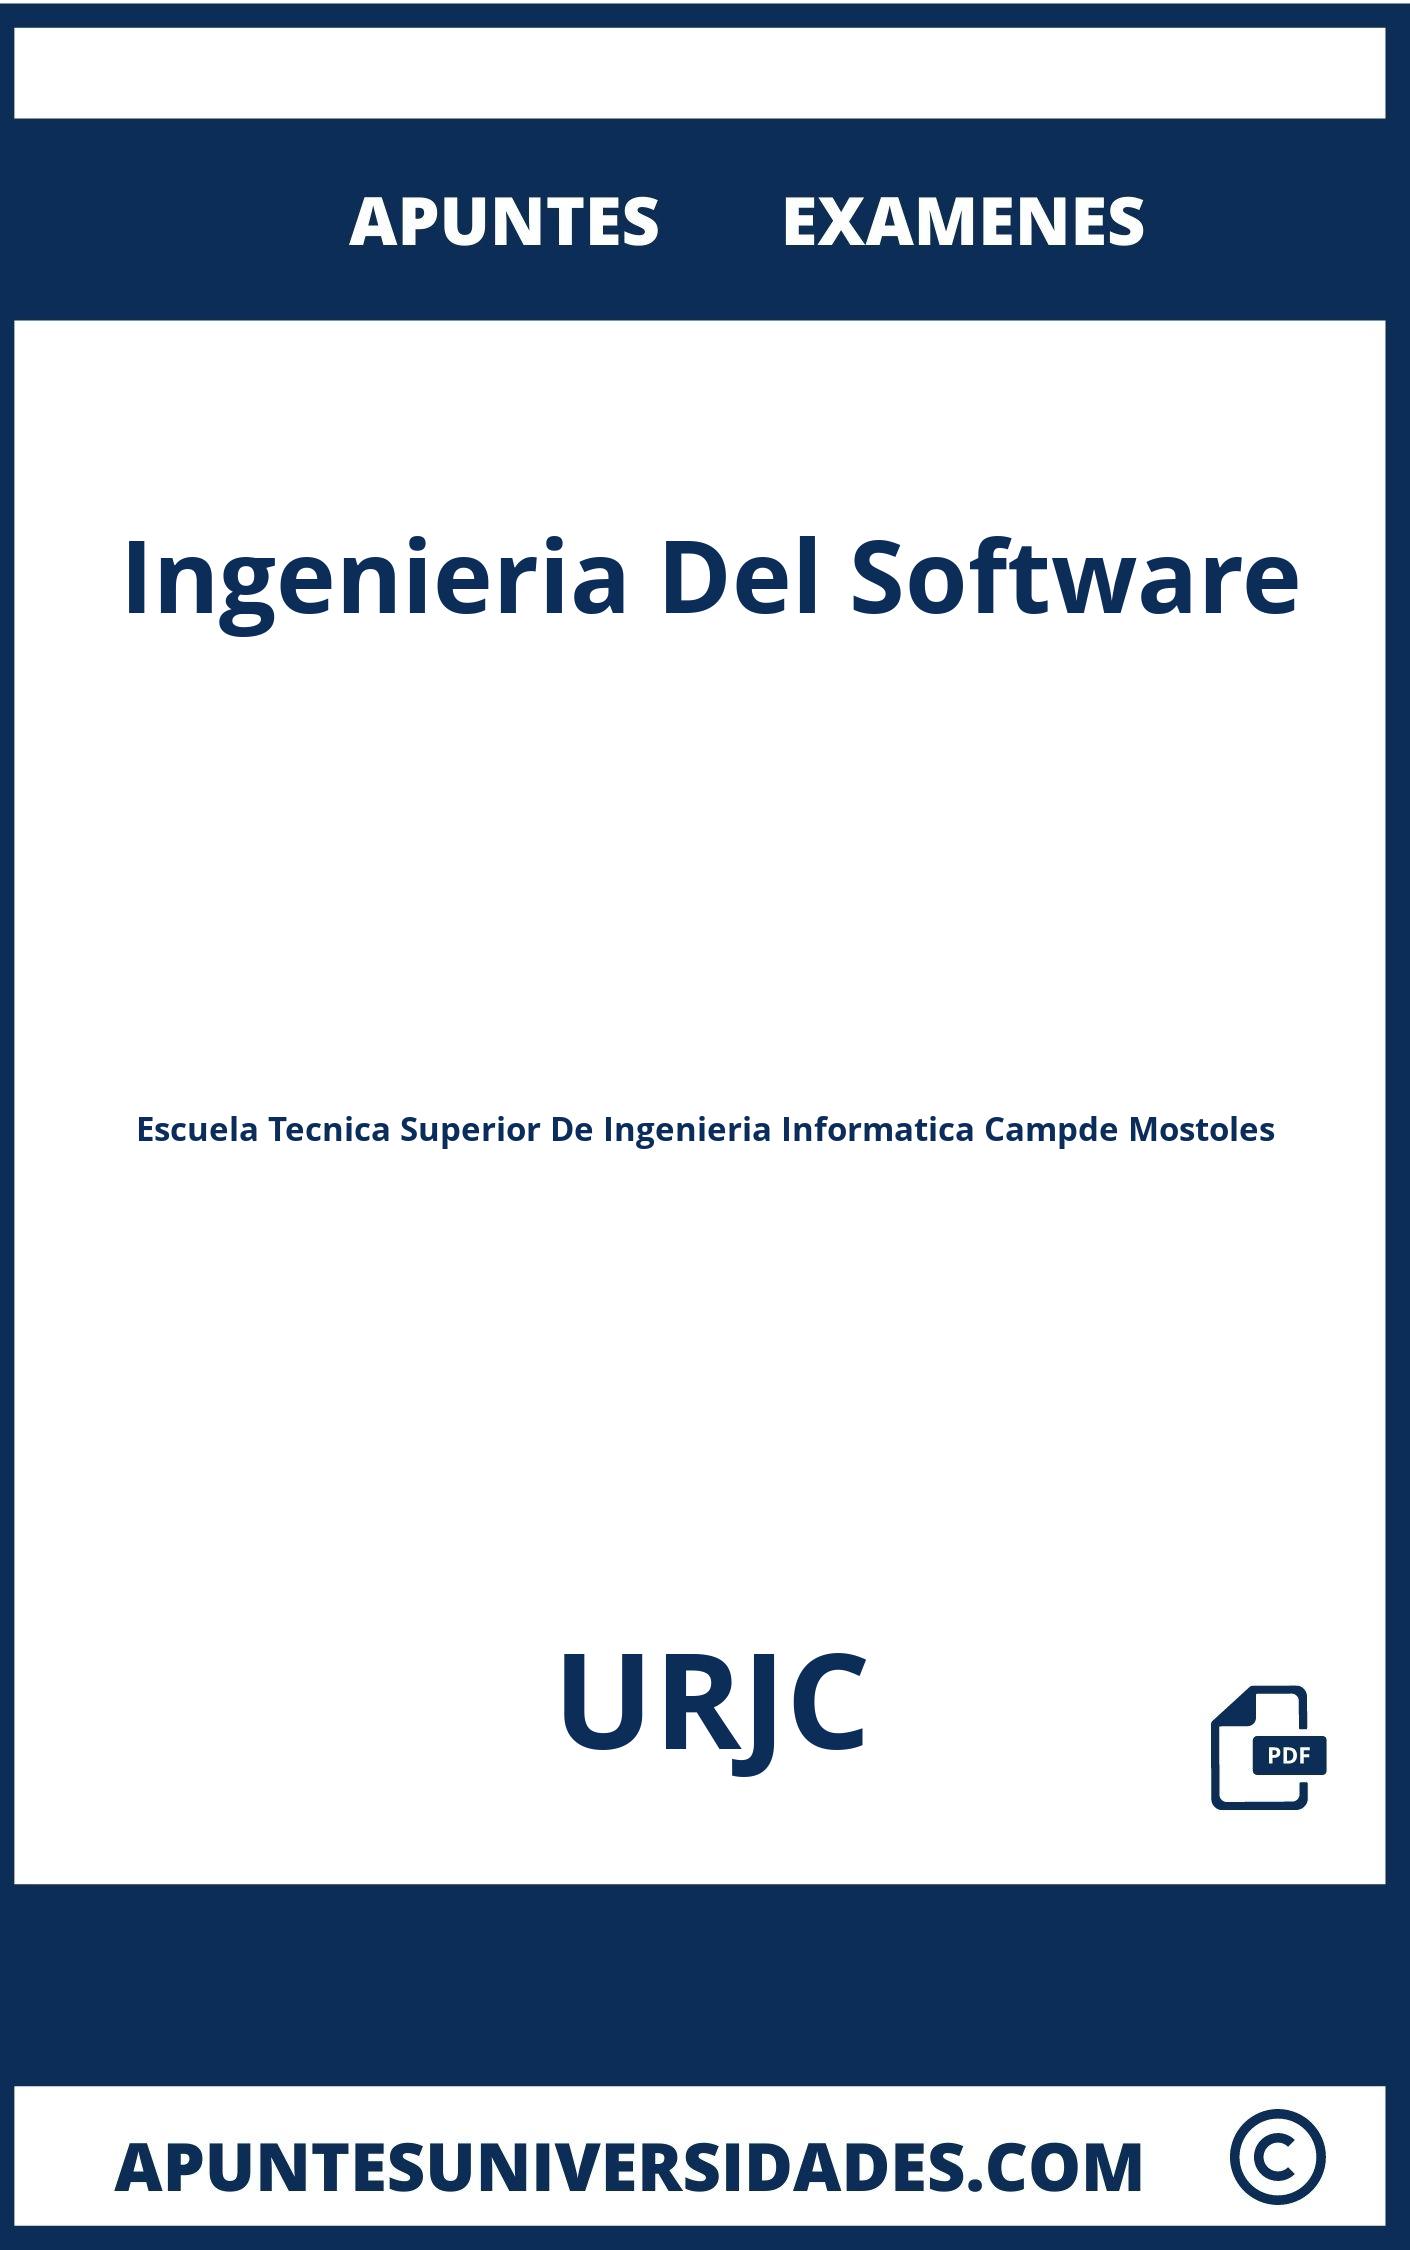 Examenes y Apuntes Ingenieria Del Software URJC